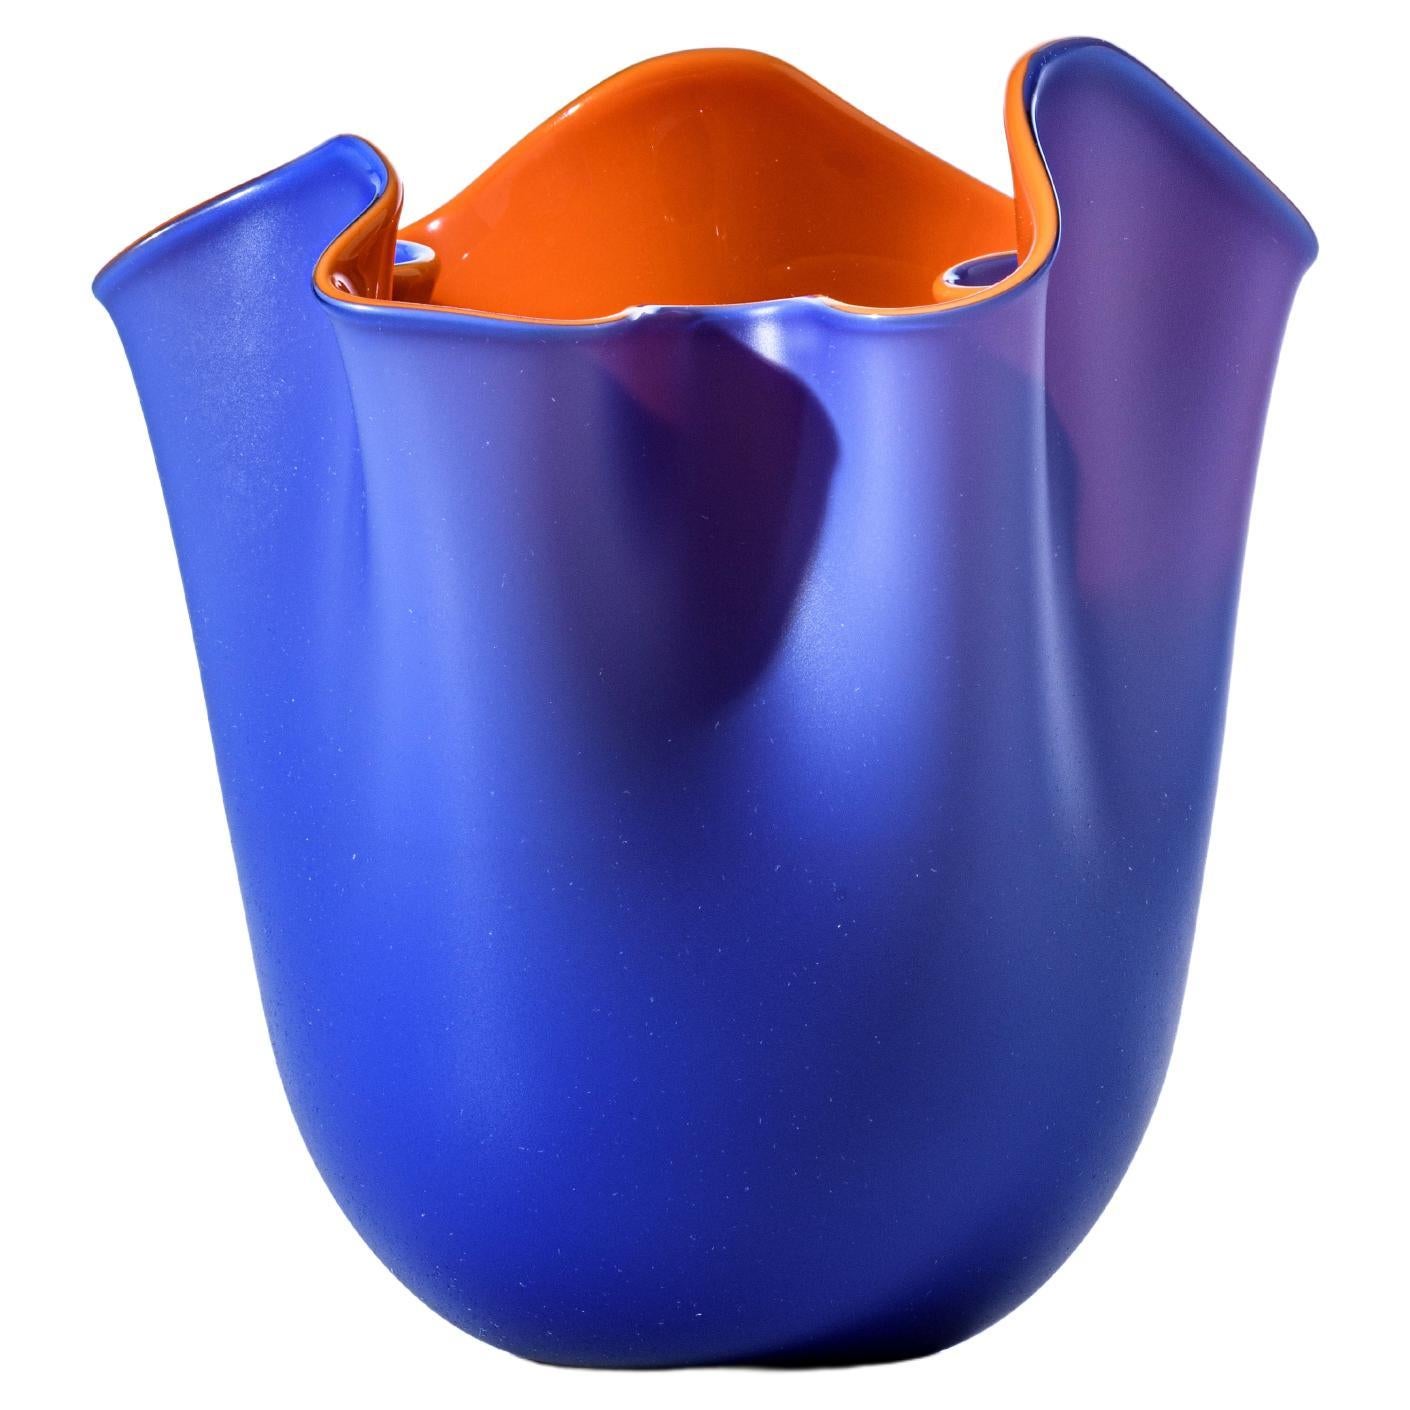 Venini Fazzoletto Bicolore sabbiato Small Vase in Horizon and Orange For Sale